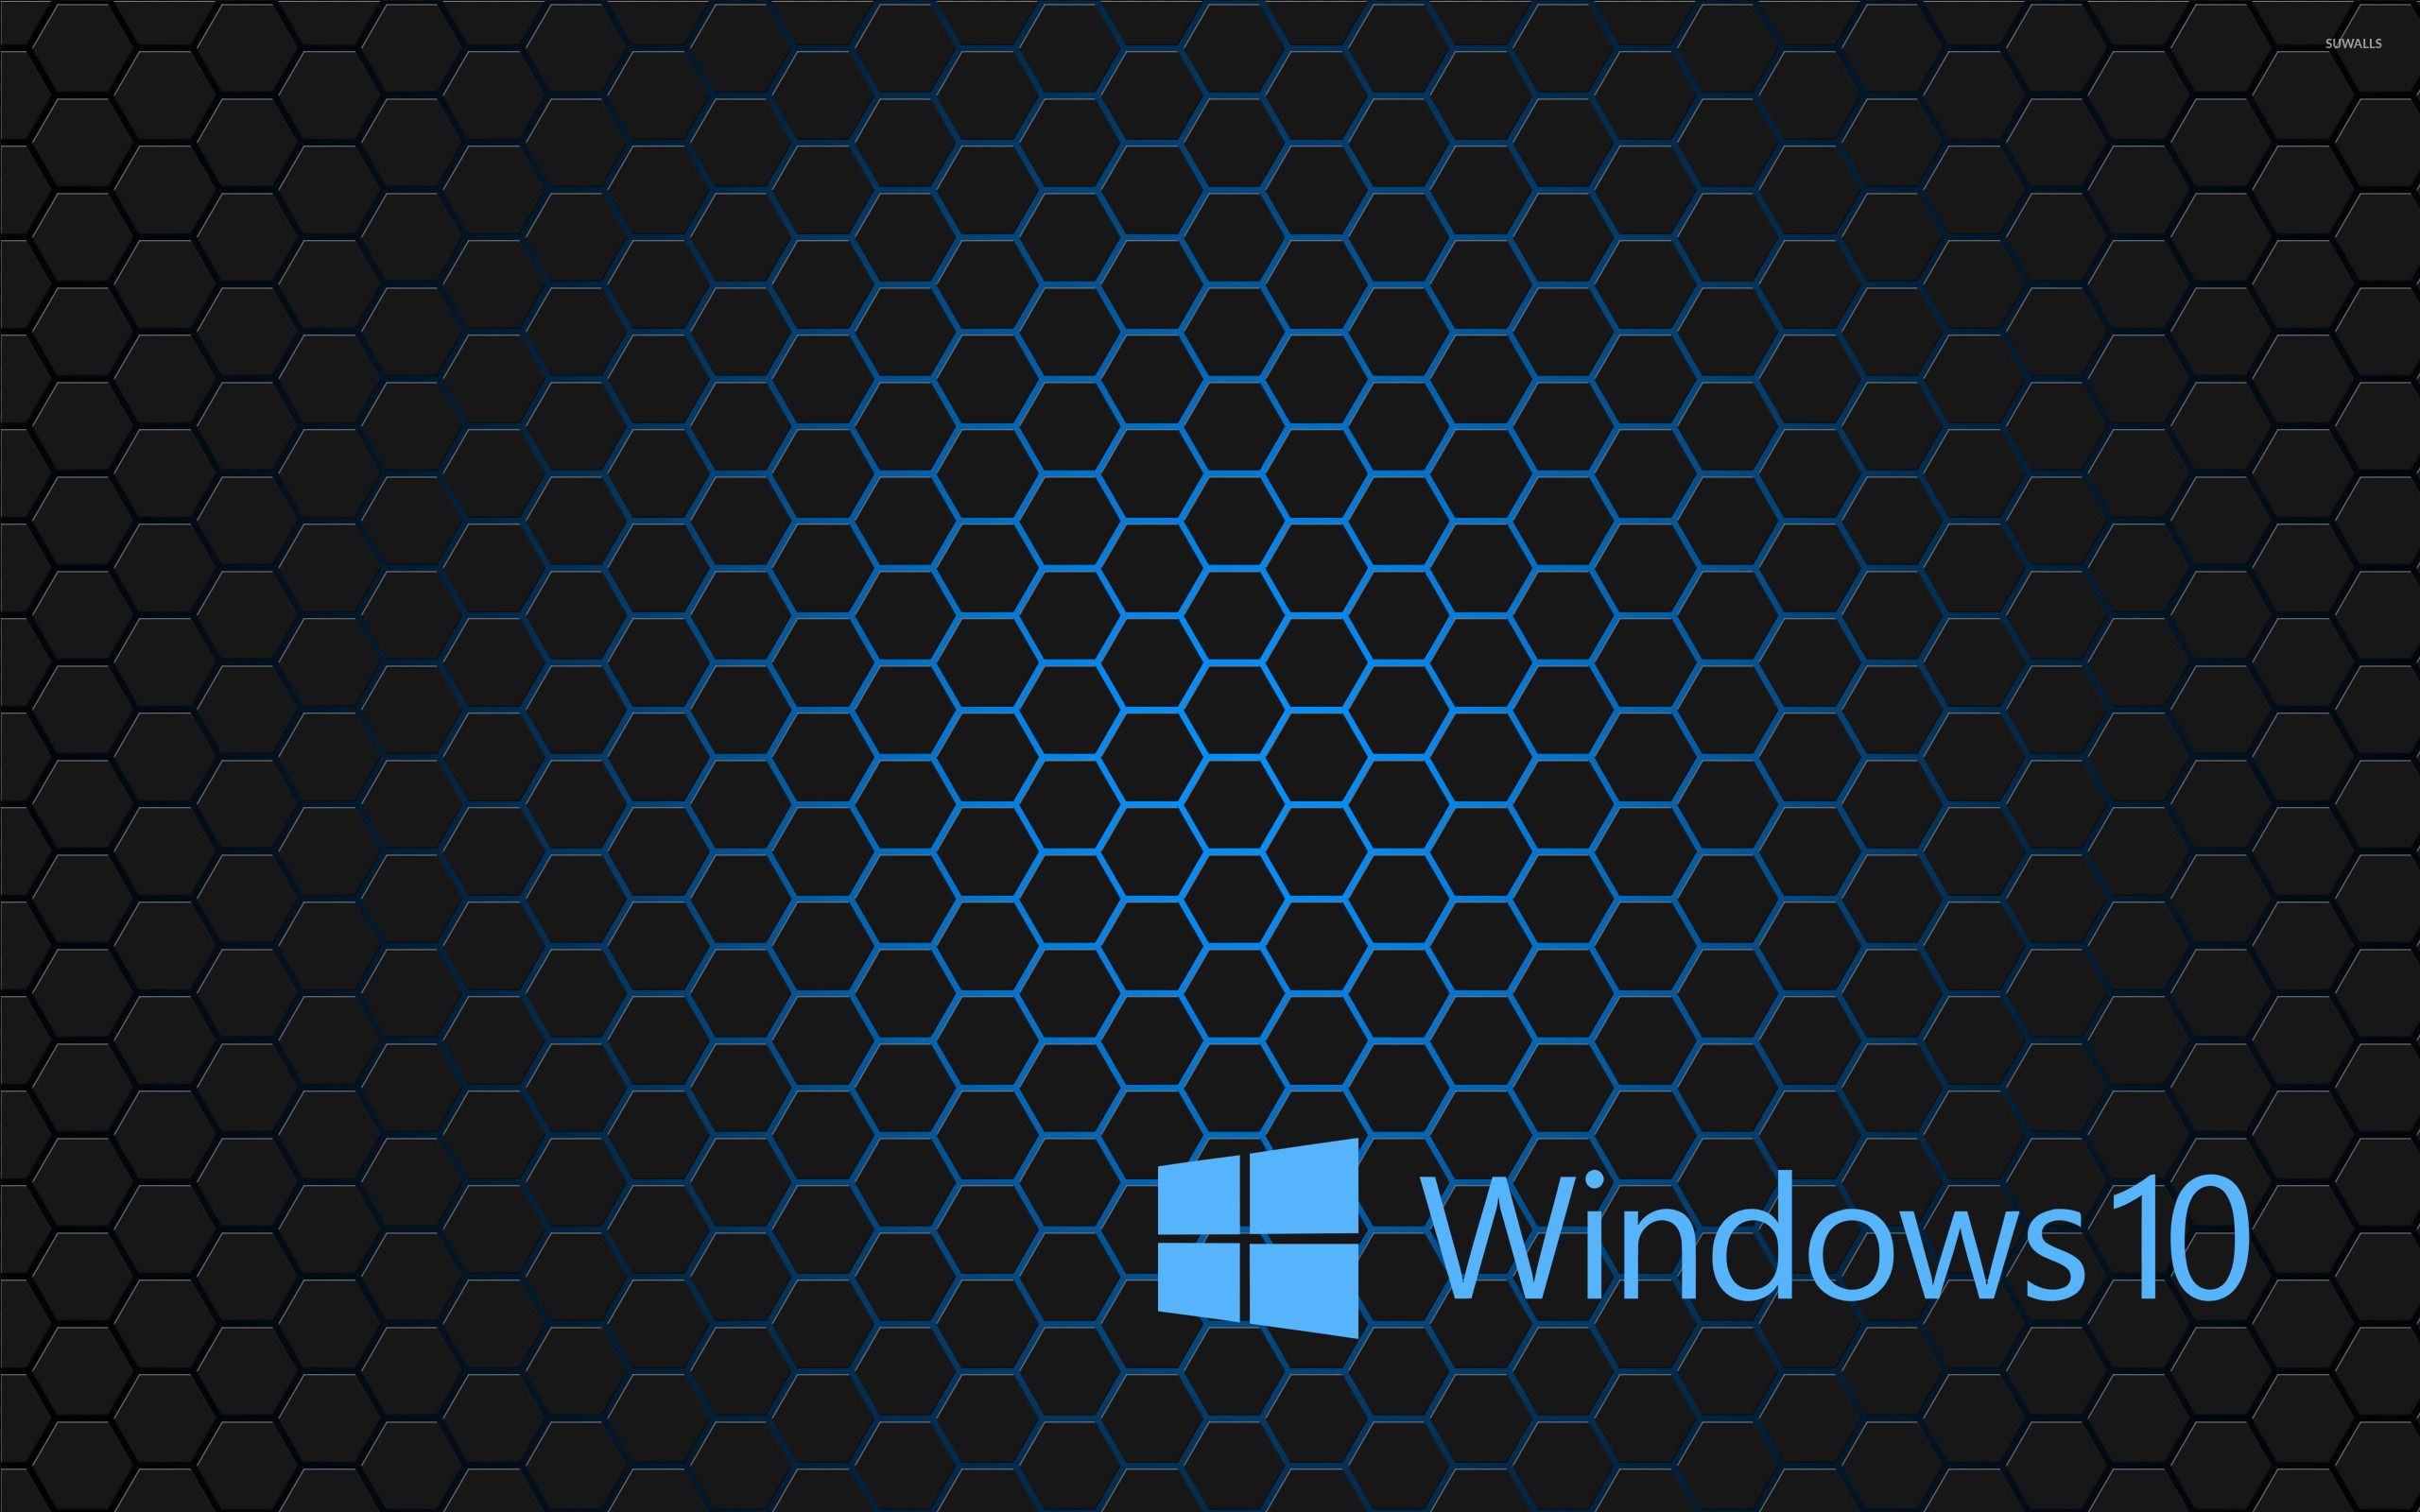 Windows 10 blue text logo on hexagons wallpaper wallpaper